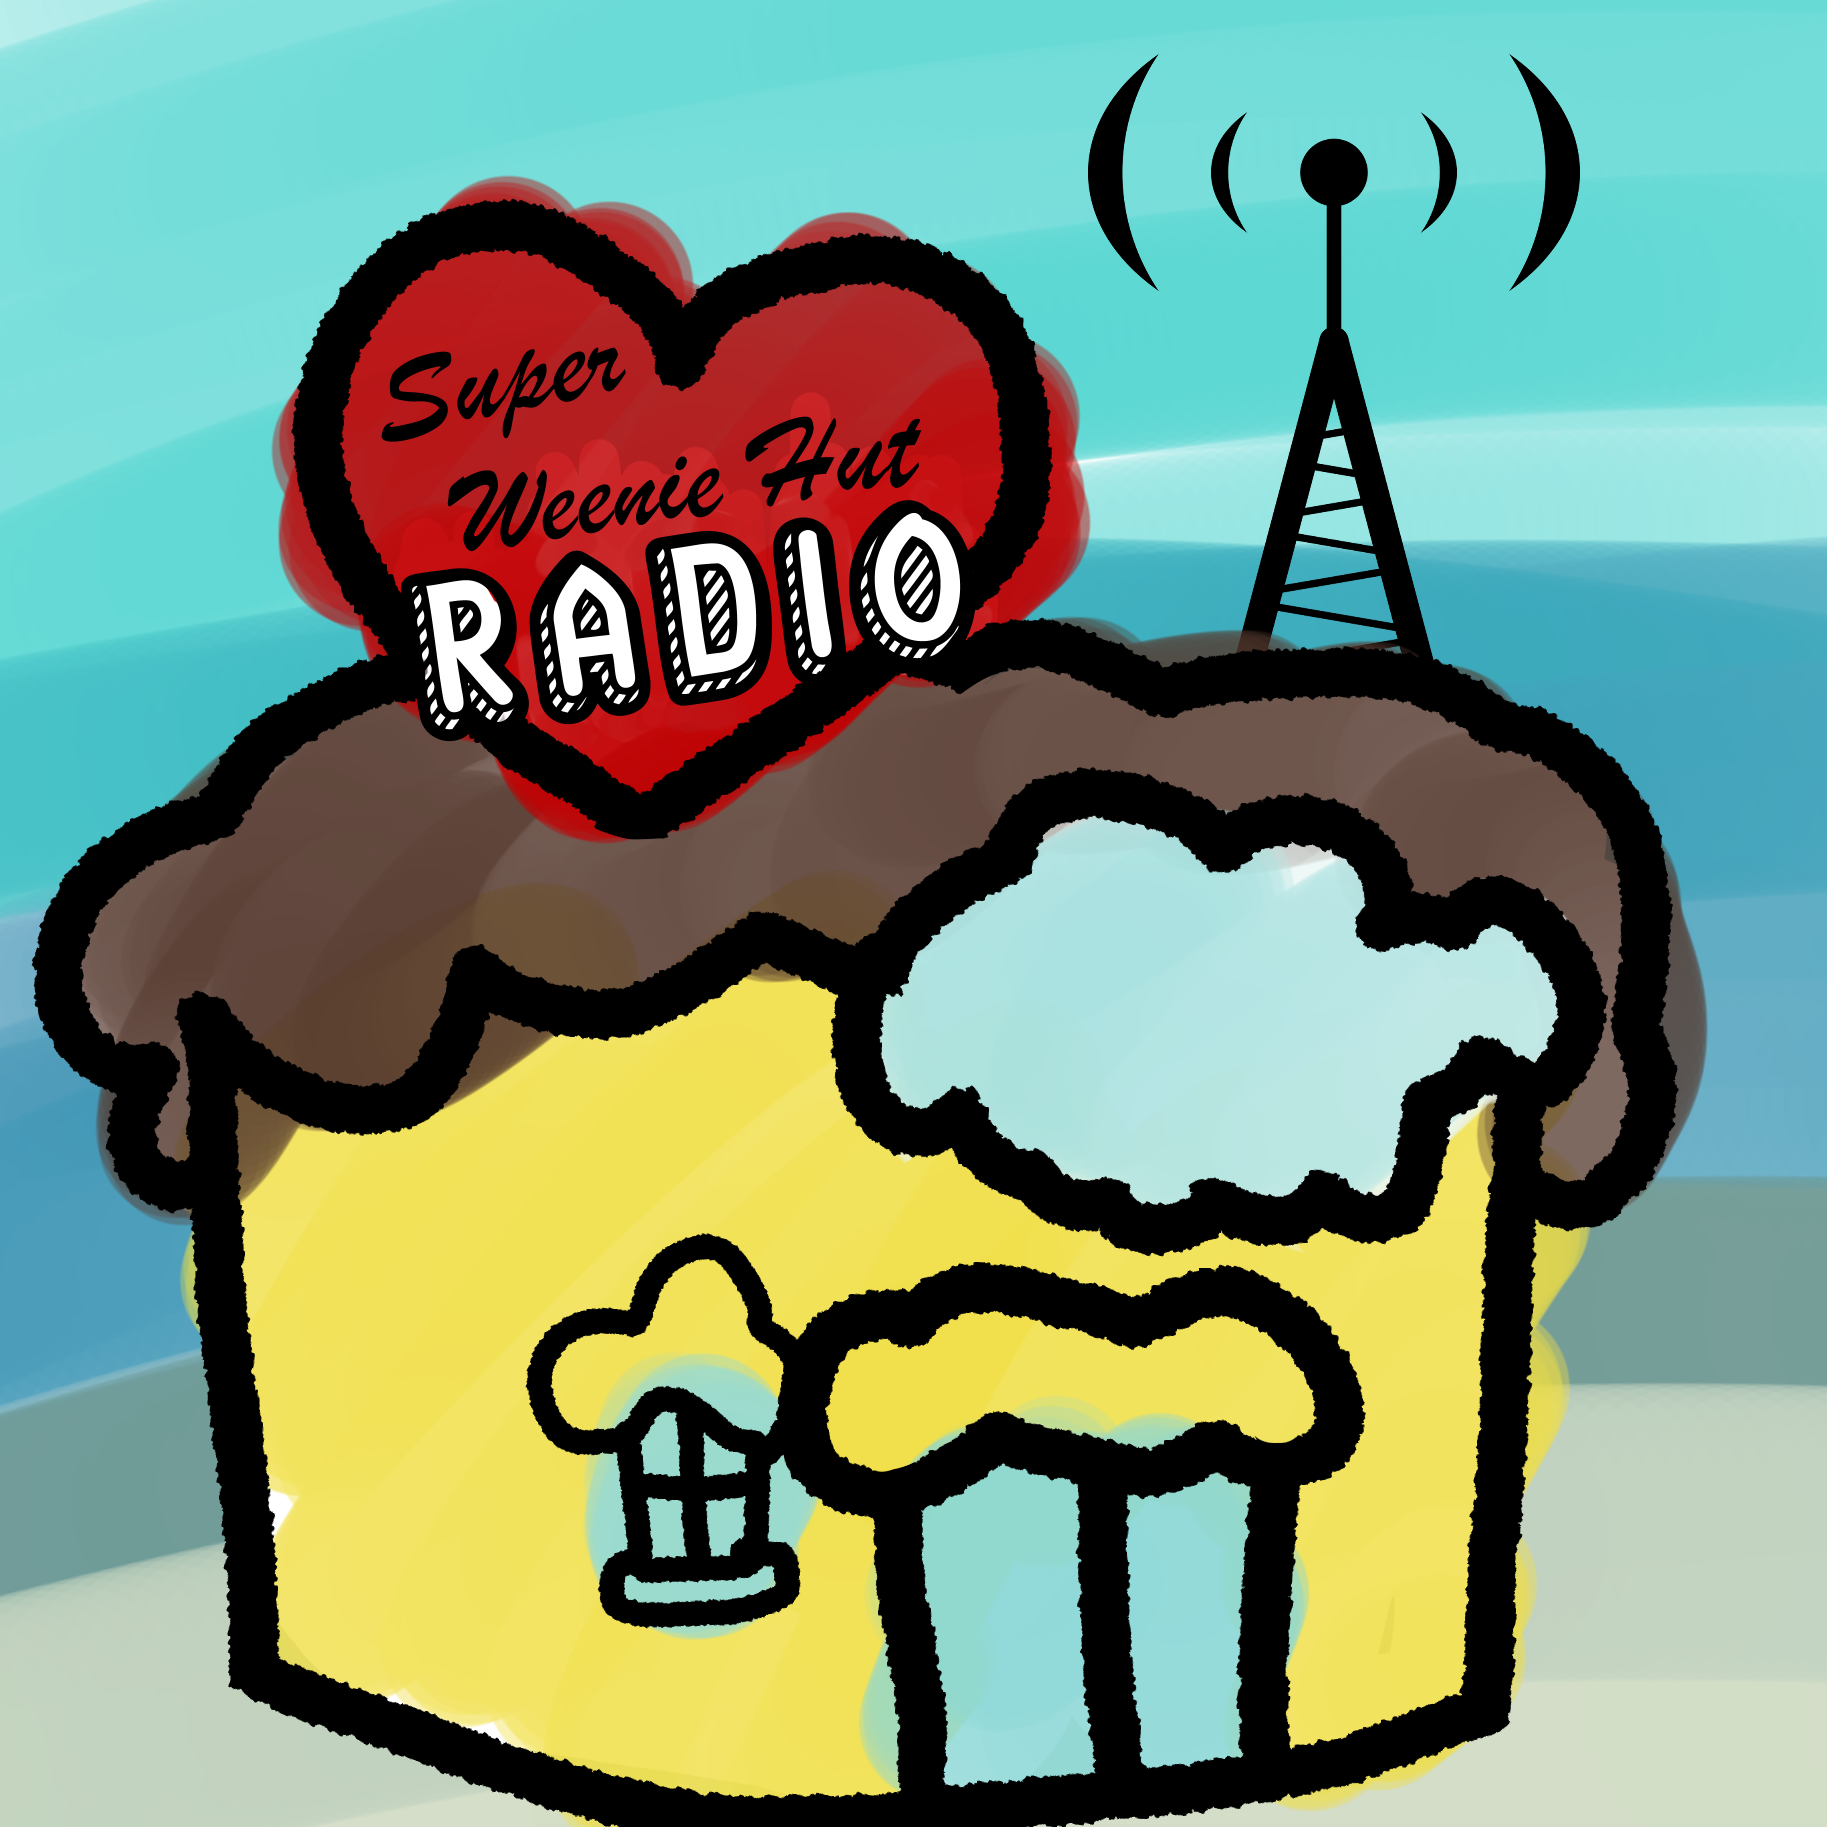 Super Weenie Hut Radio